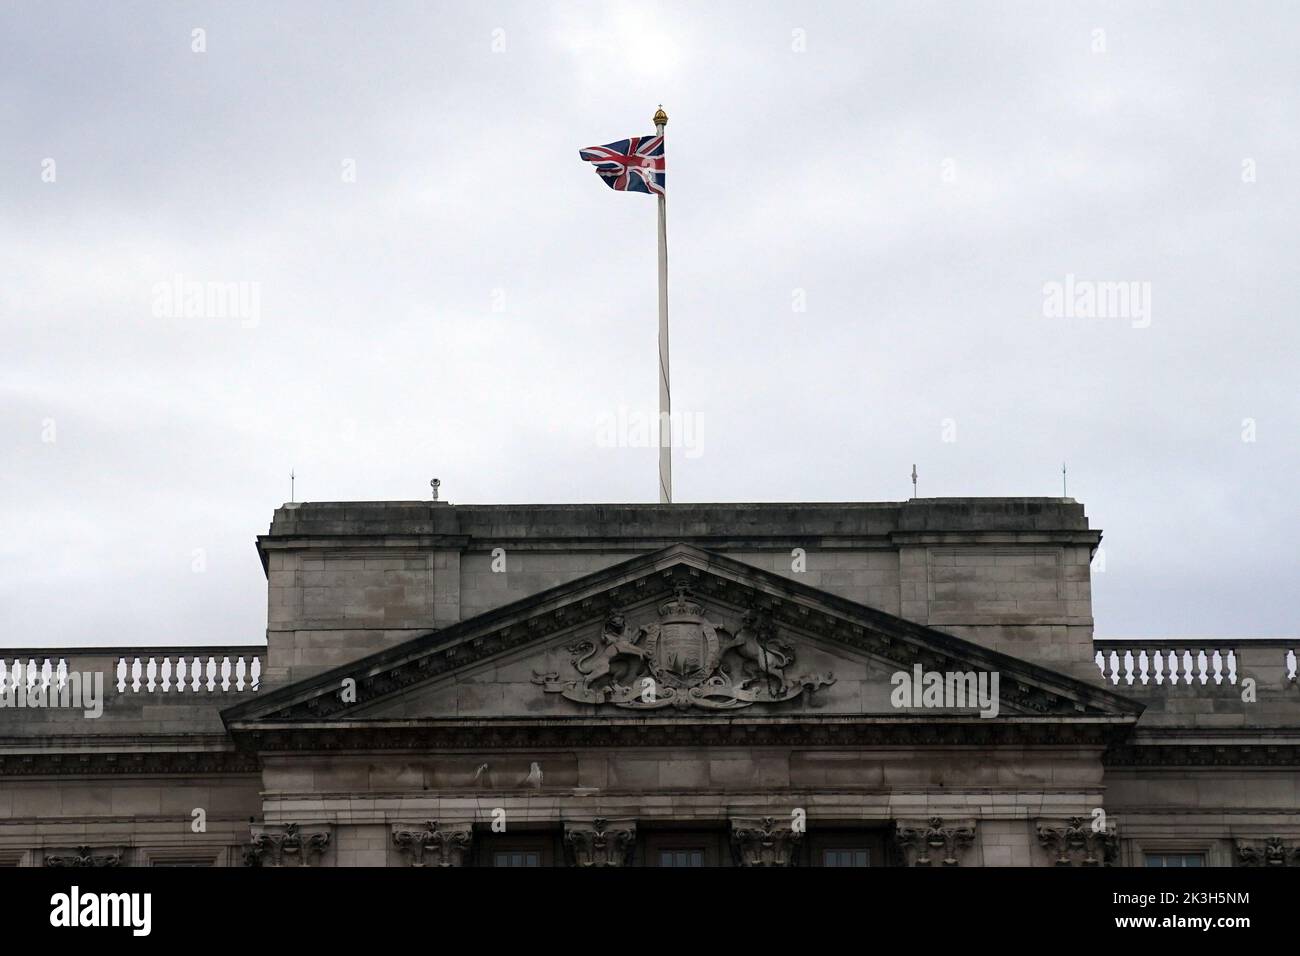 La bandiera dell'Unione su Buckingham Palace, Londra, viene restituita all'albero pieno come il periodo di lutto dopo la morte della regina Elisabetta II giunge alla fine. Le bandiere nelle residenze reali erano rimaste a metà albero da quando la regina morì il 8 settembre. Data immagine: Martedì 27 settembre 2022. Foto Stock